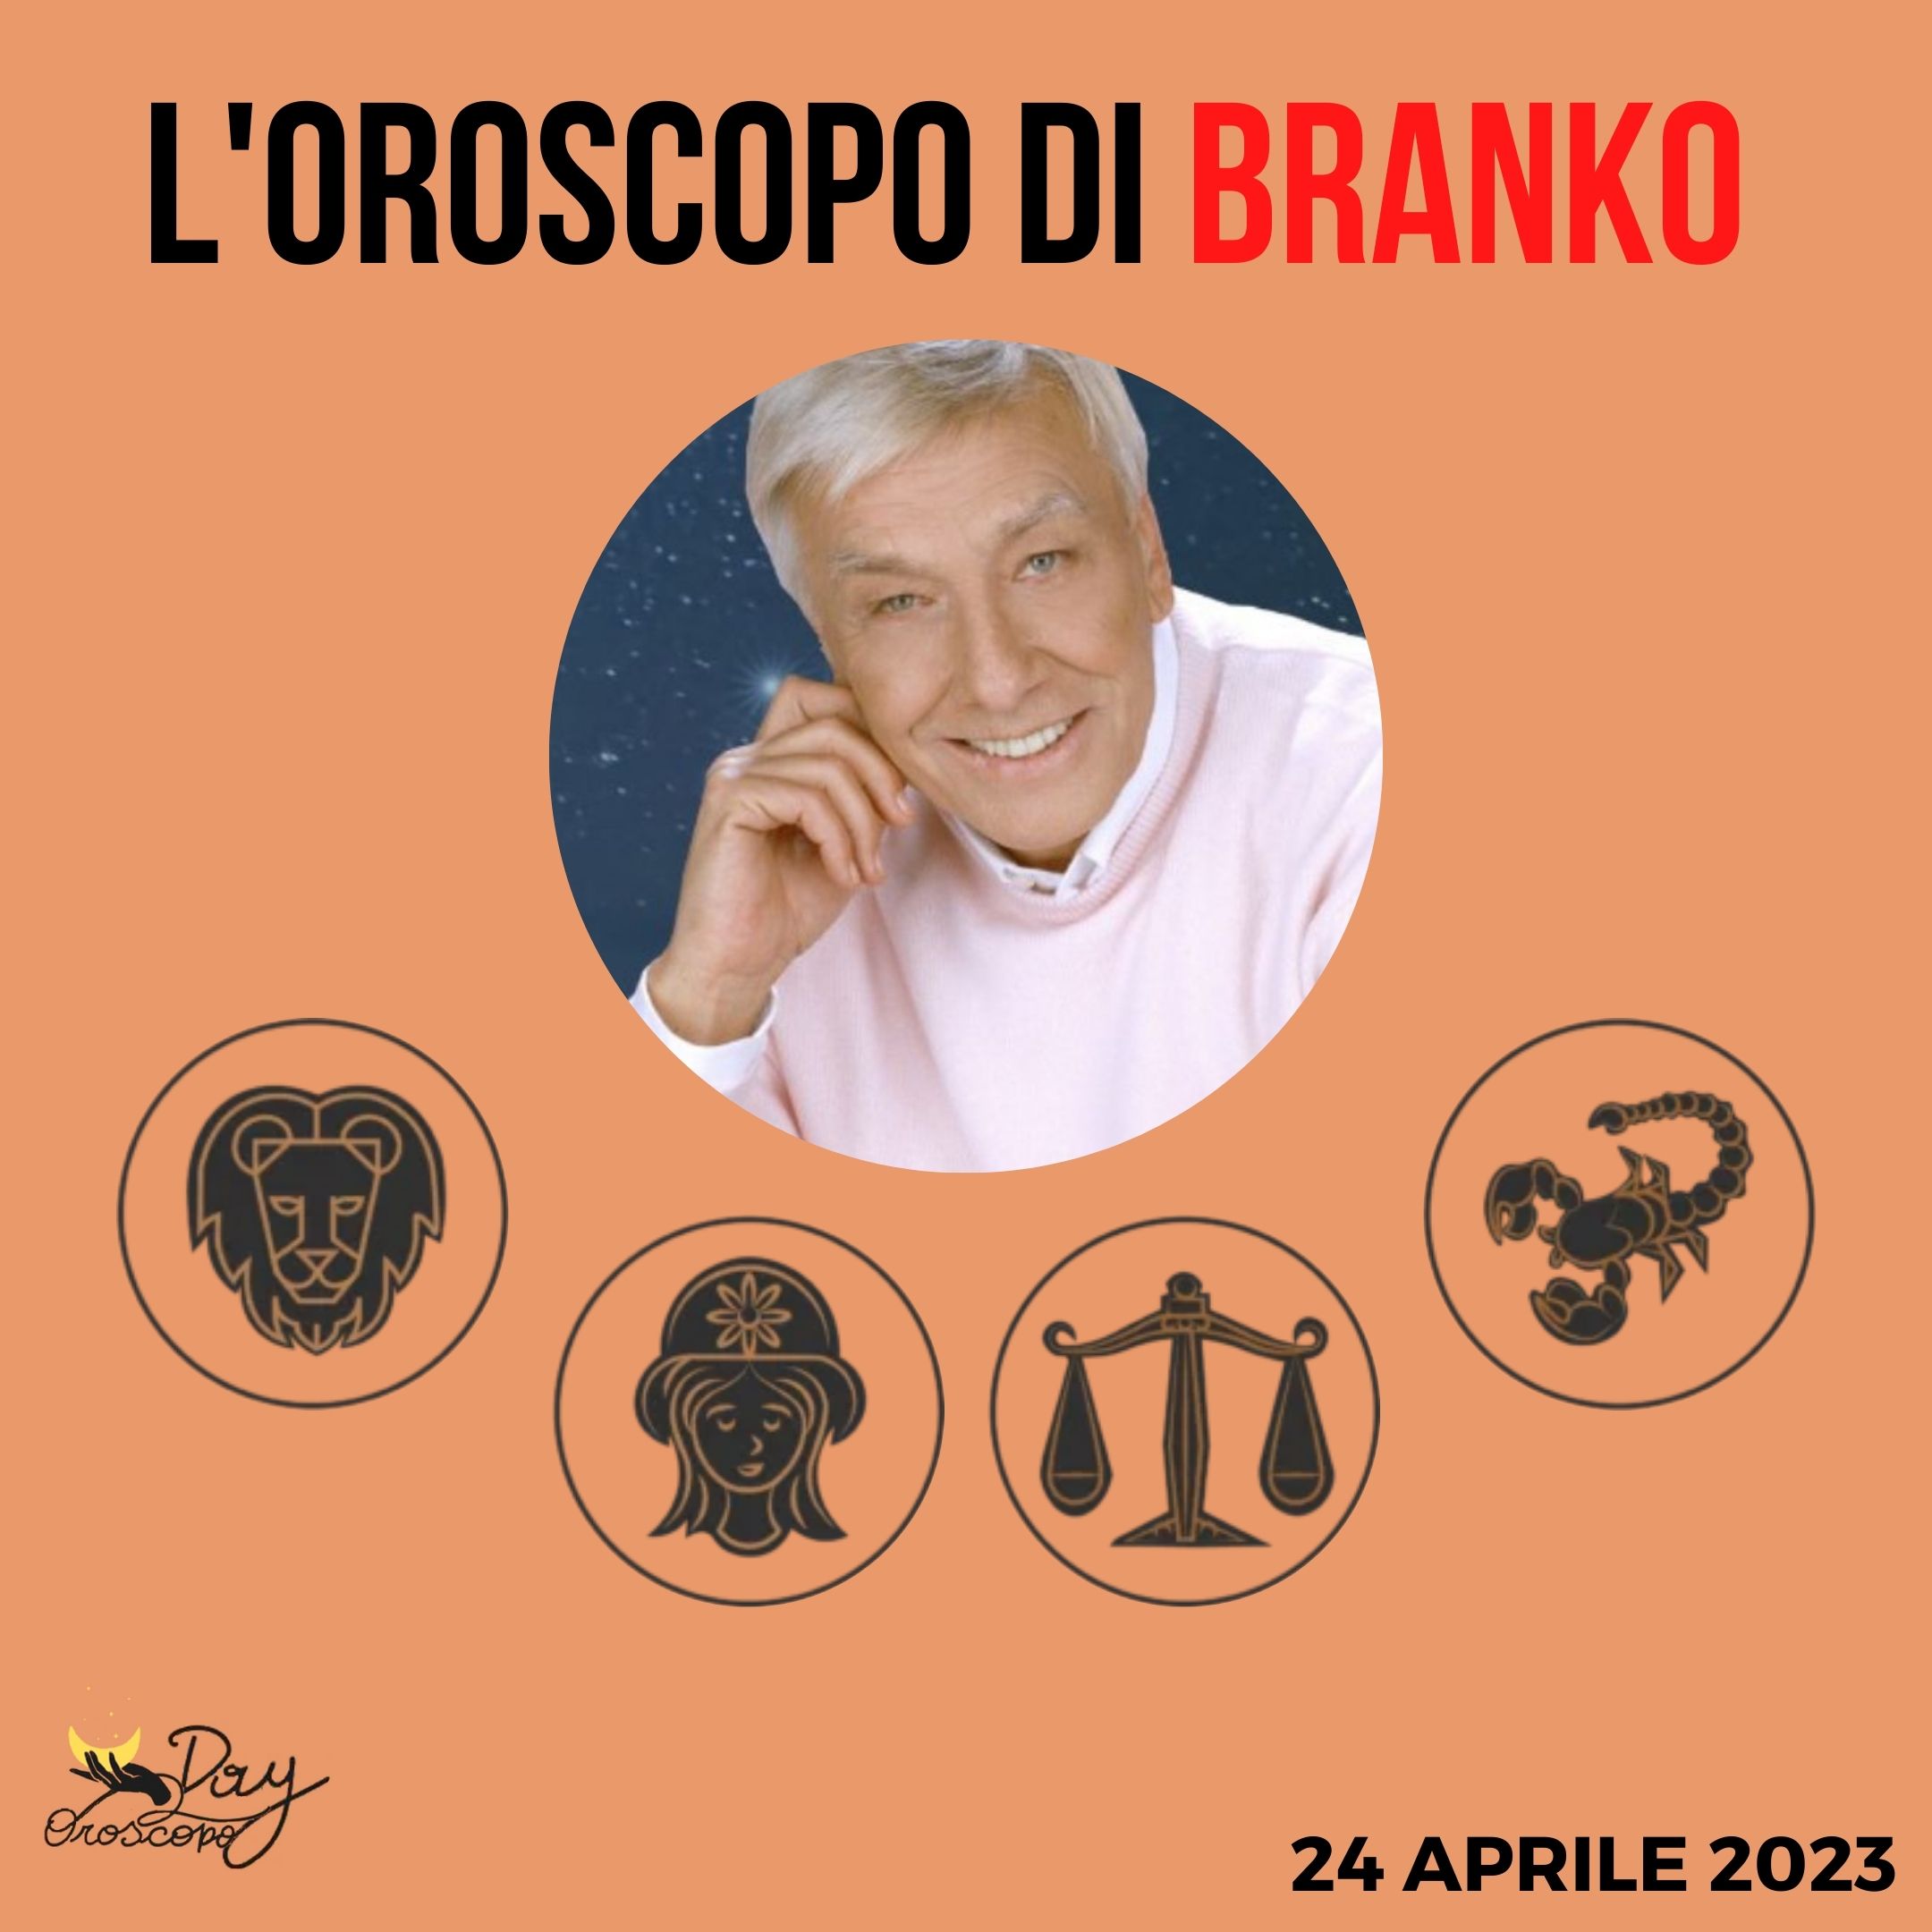 Oroscopo oggi domani Branko 24 aprile Leone Vergine Bilancia Scorpione